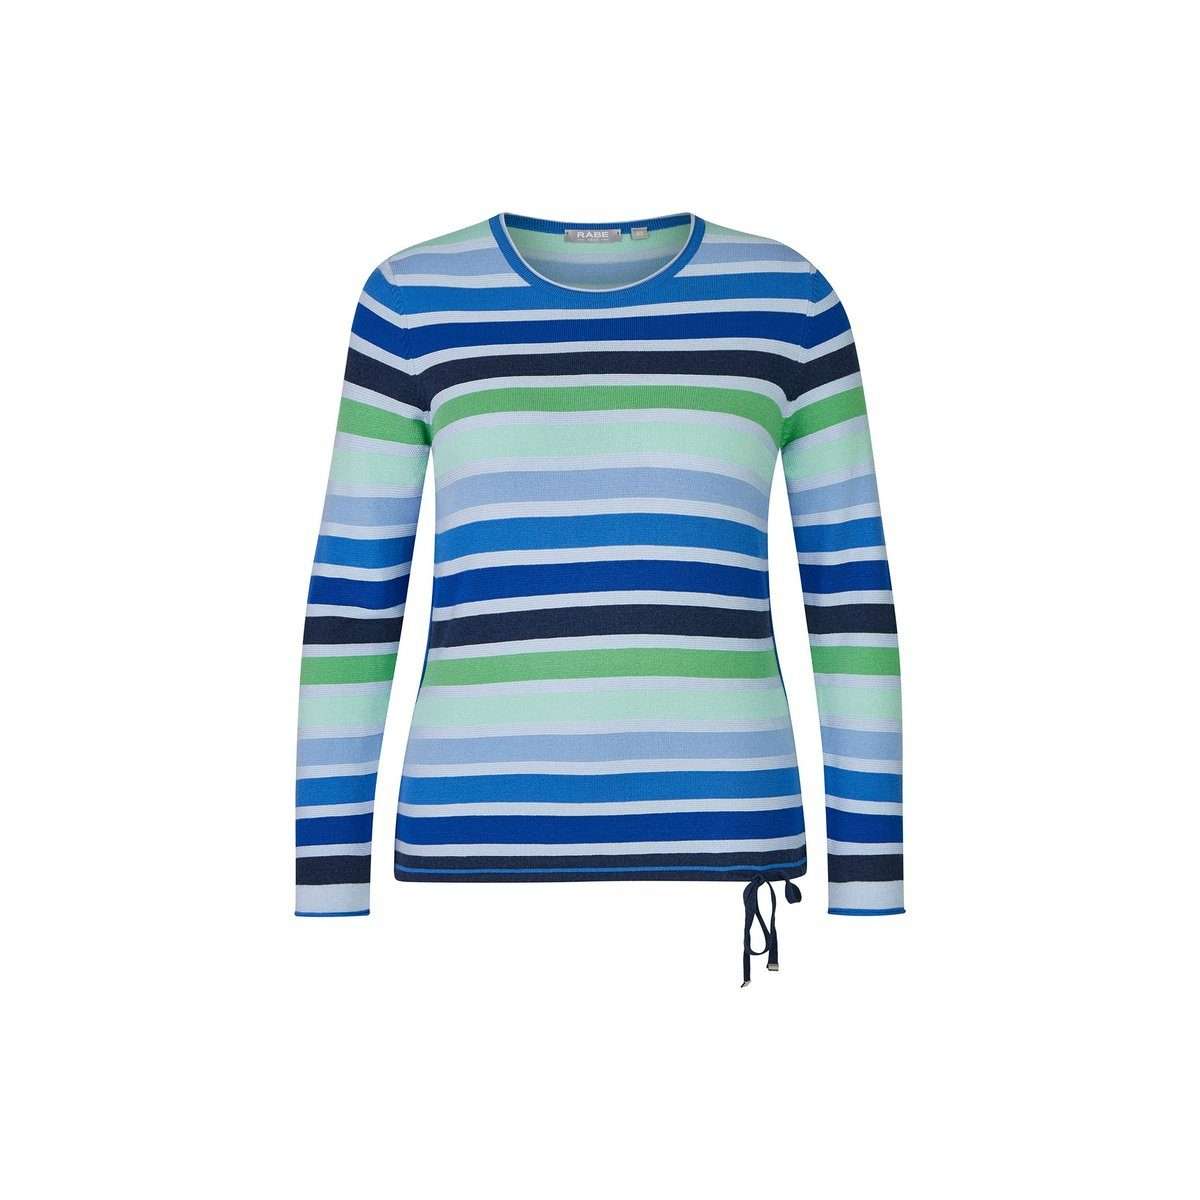 Длинный свитер синего цвета обычного кроя (1 шт.)